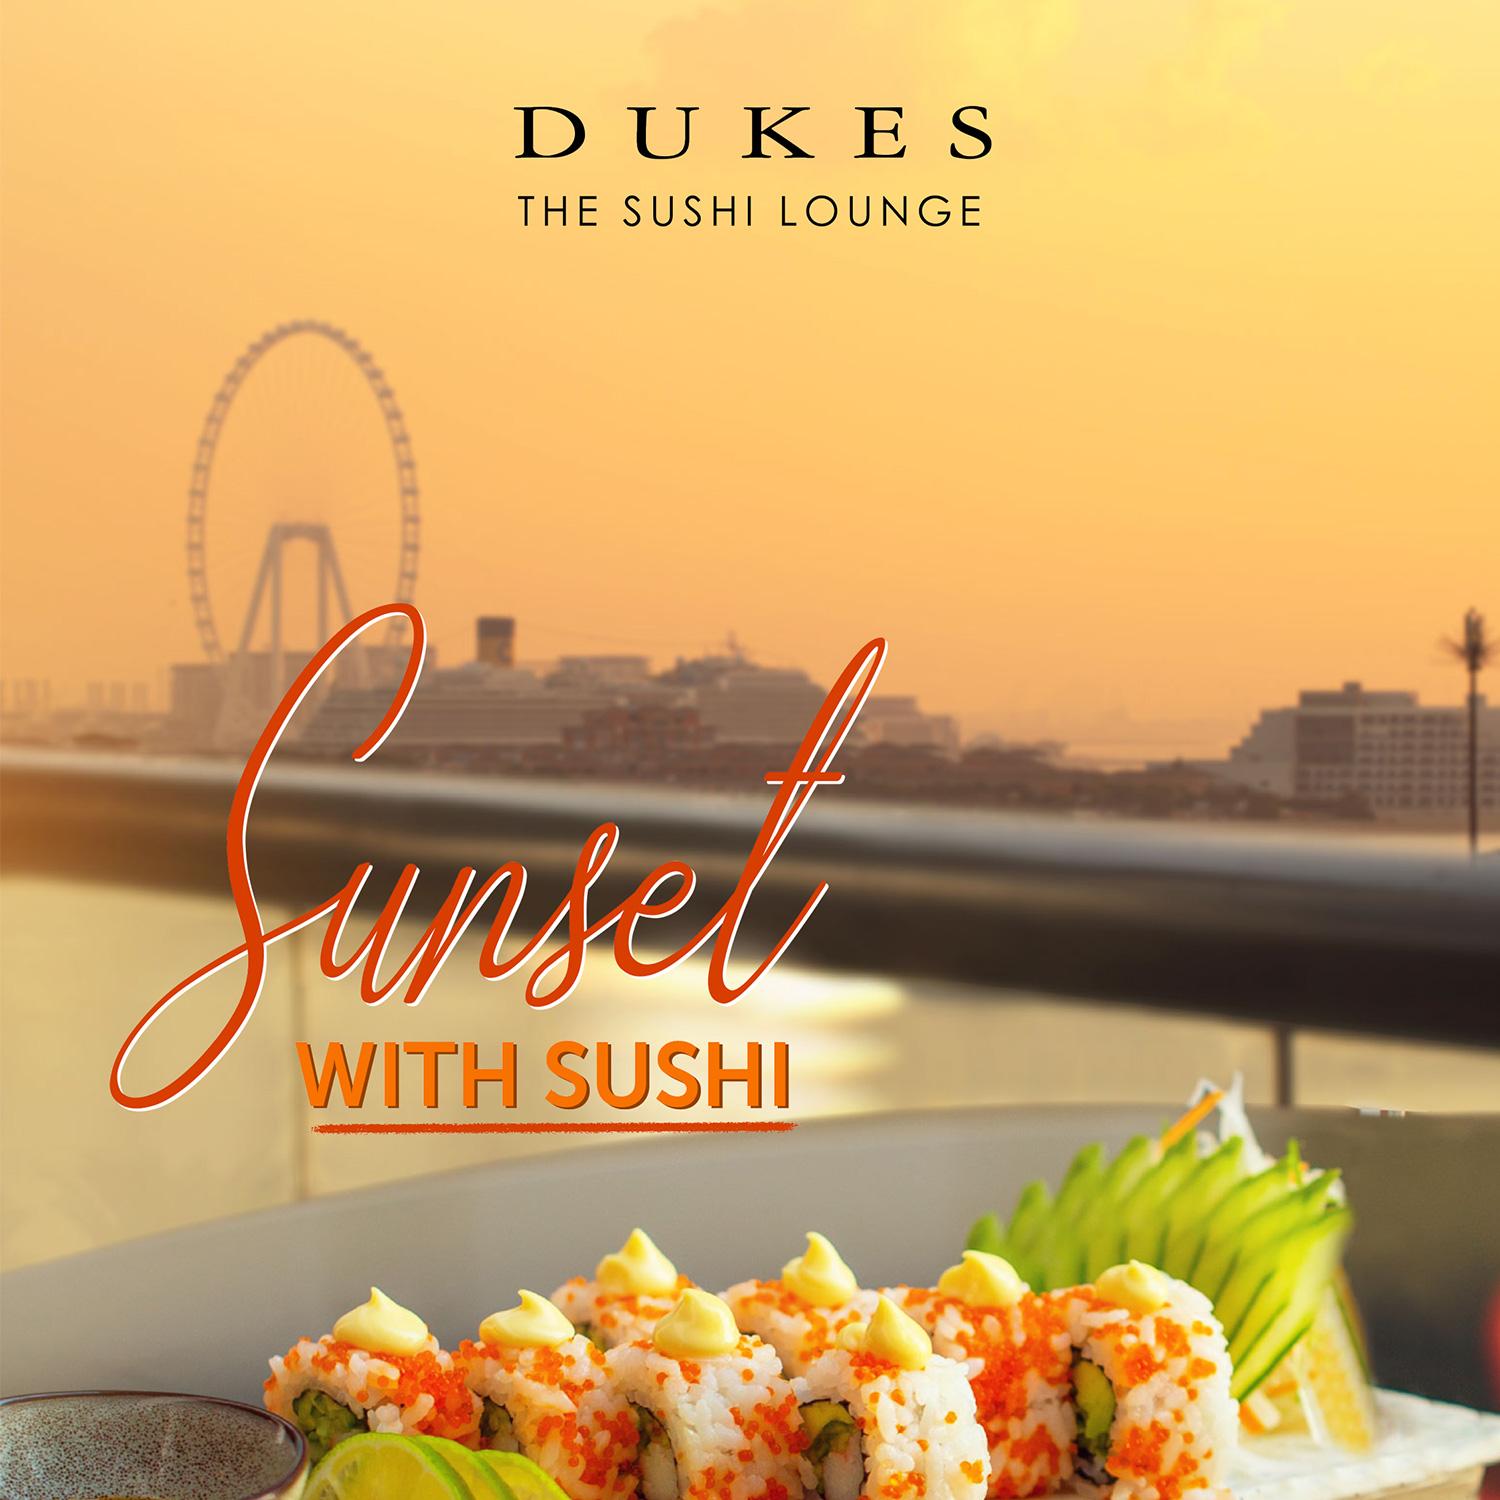 Sunset with Sushi